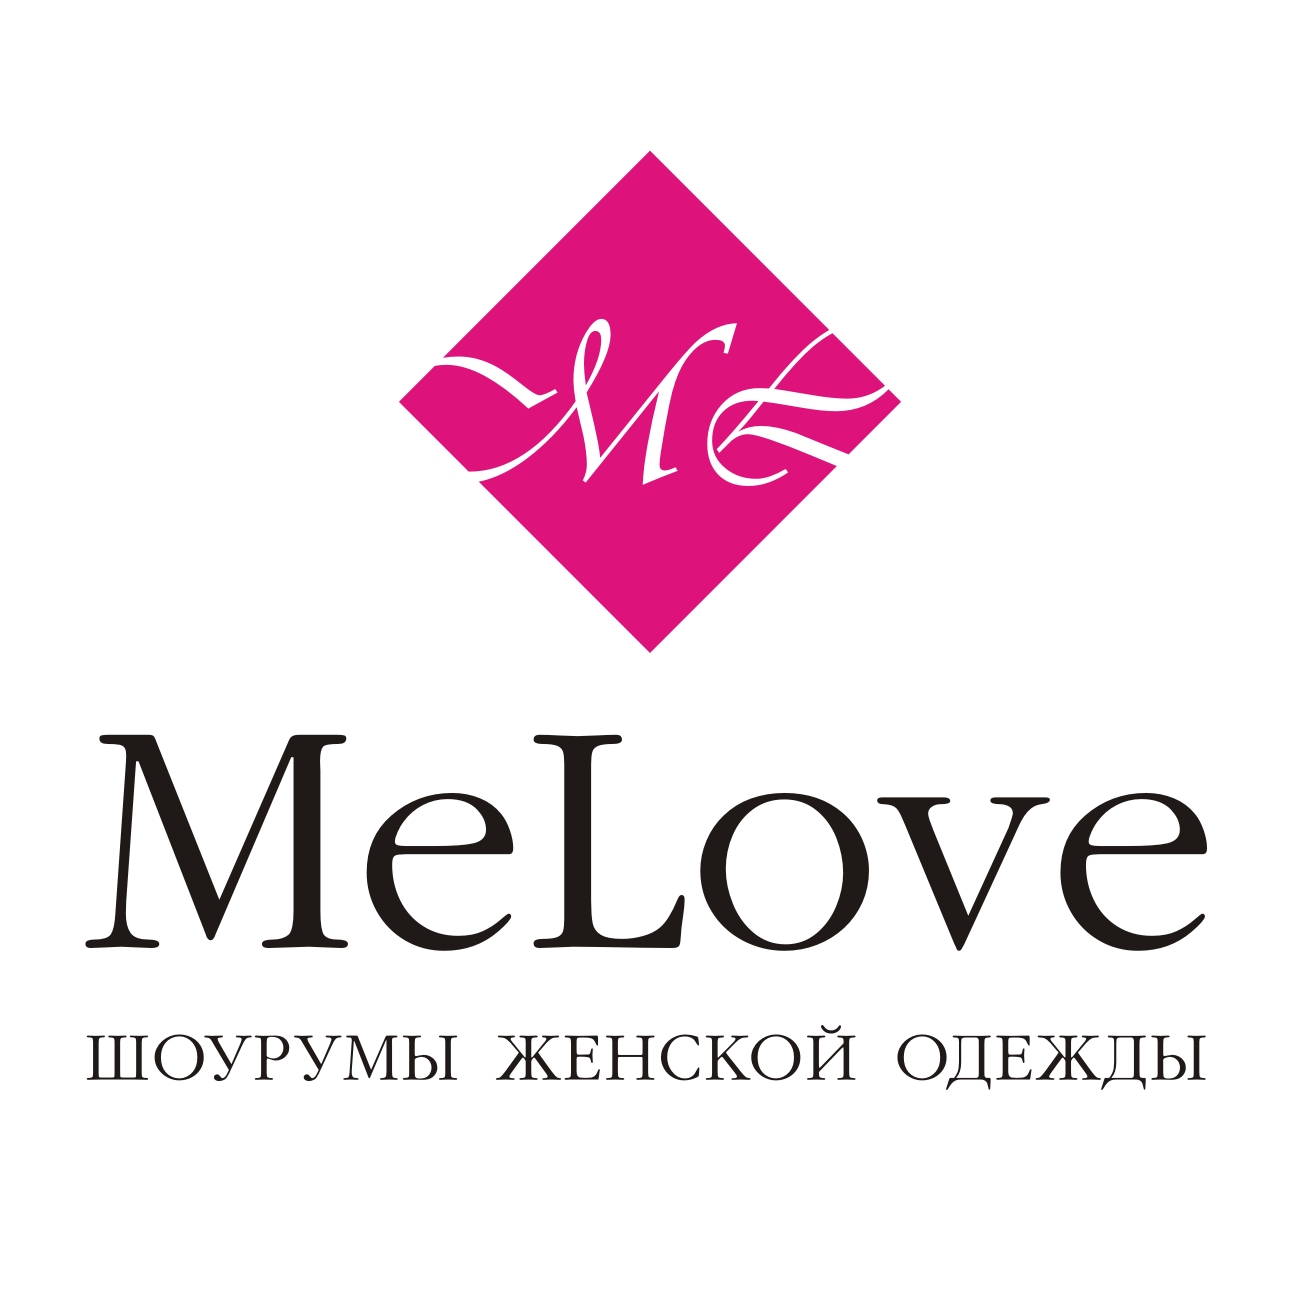 Шоурумы женской одежды MeLove